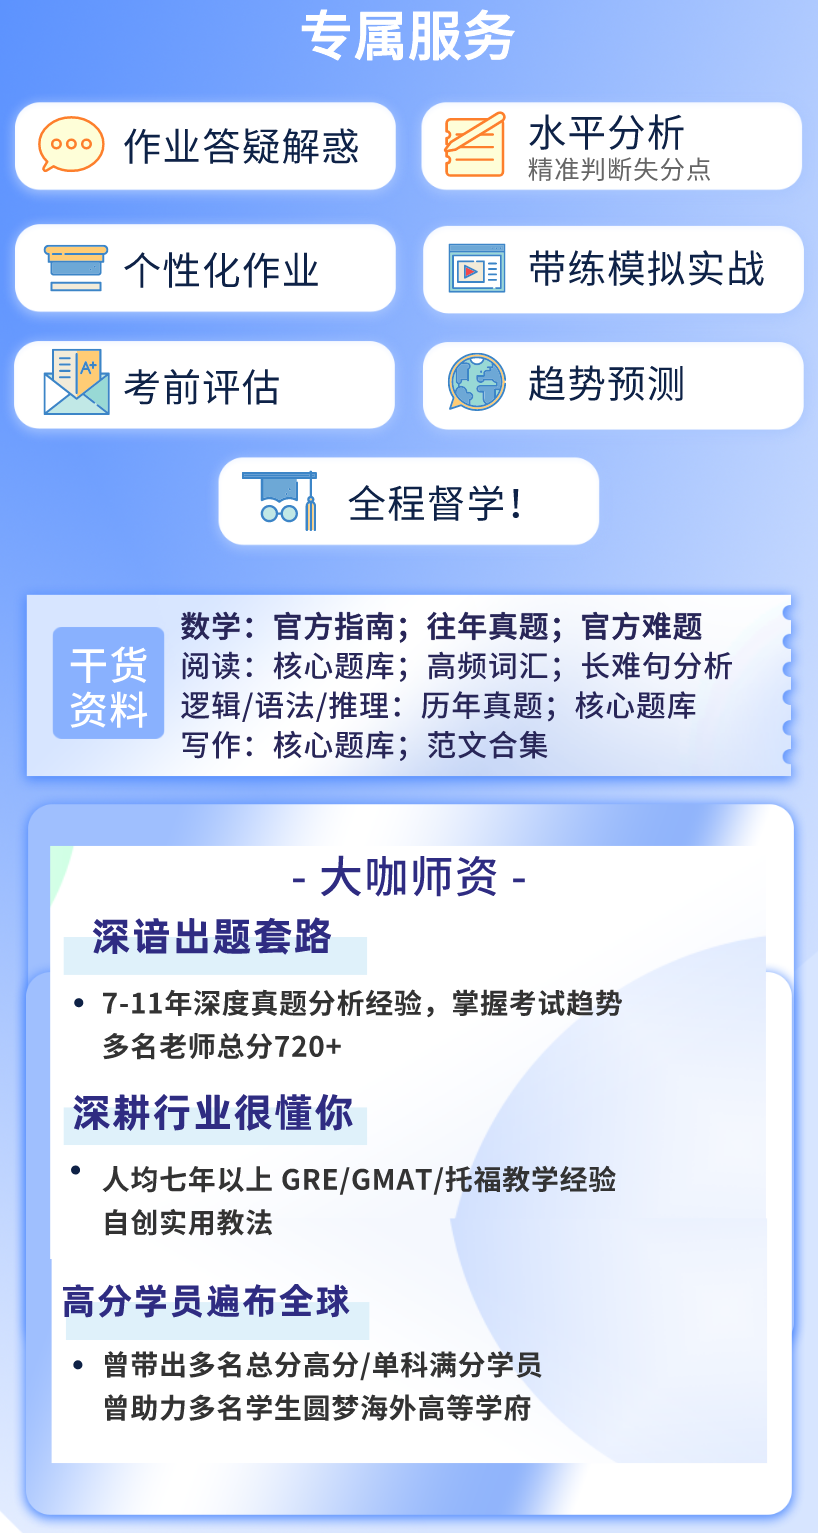 https://simg01.gaodunwangxiao.com/uploadfiles/product-center/202210/25/b8d3e_20221025135849.png